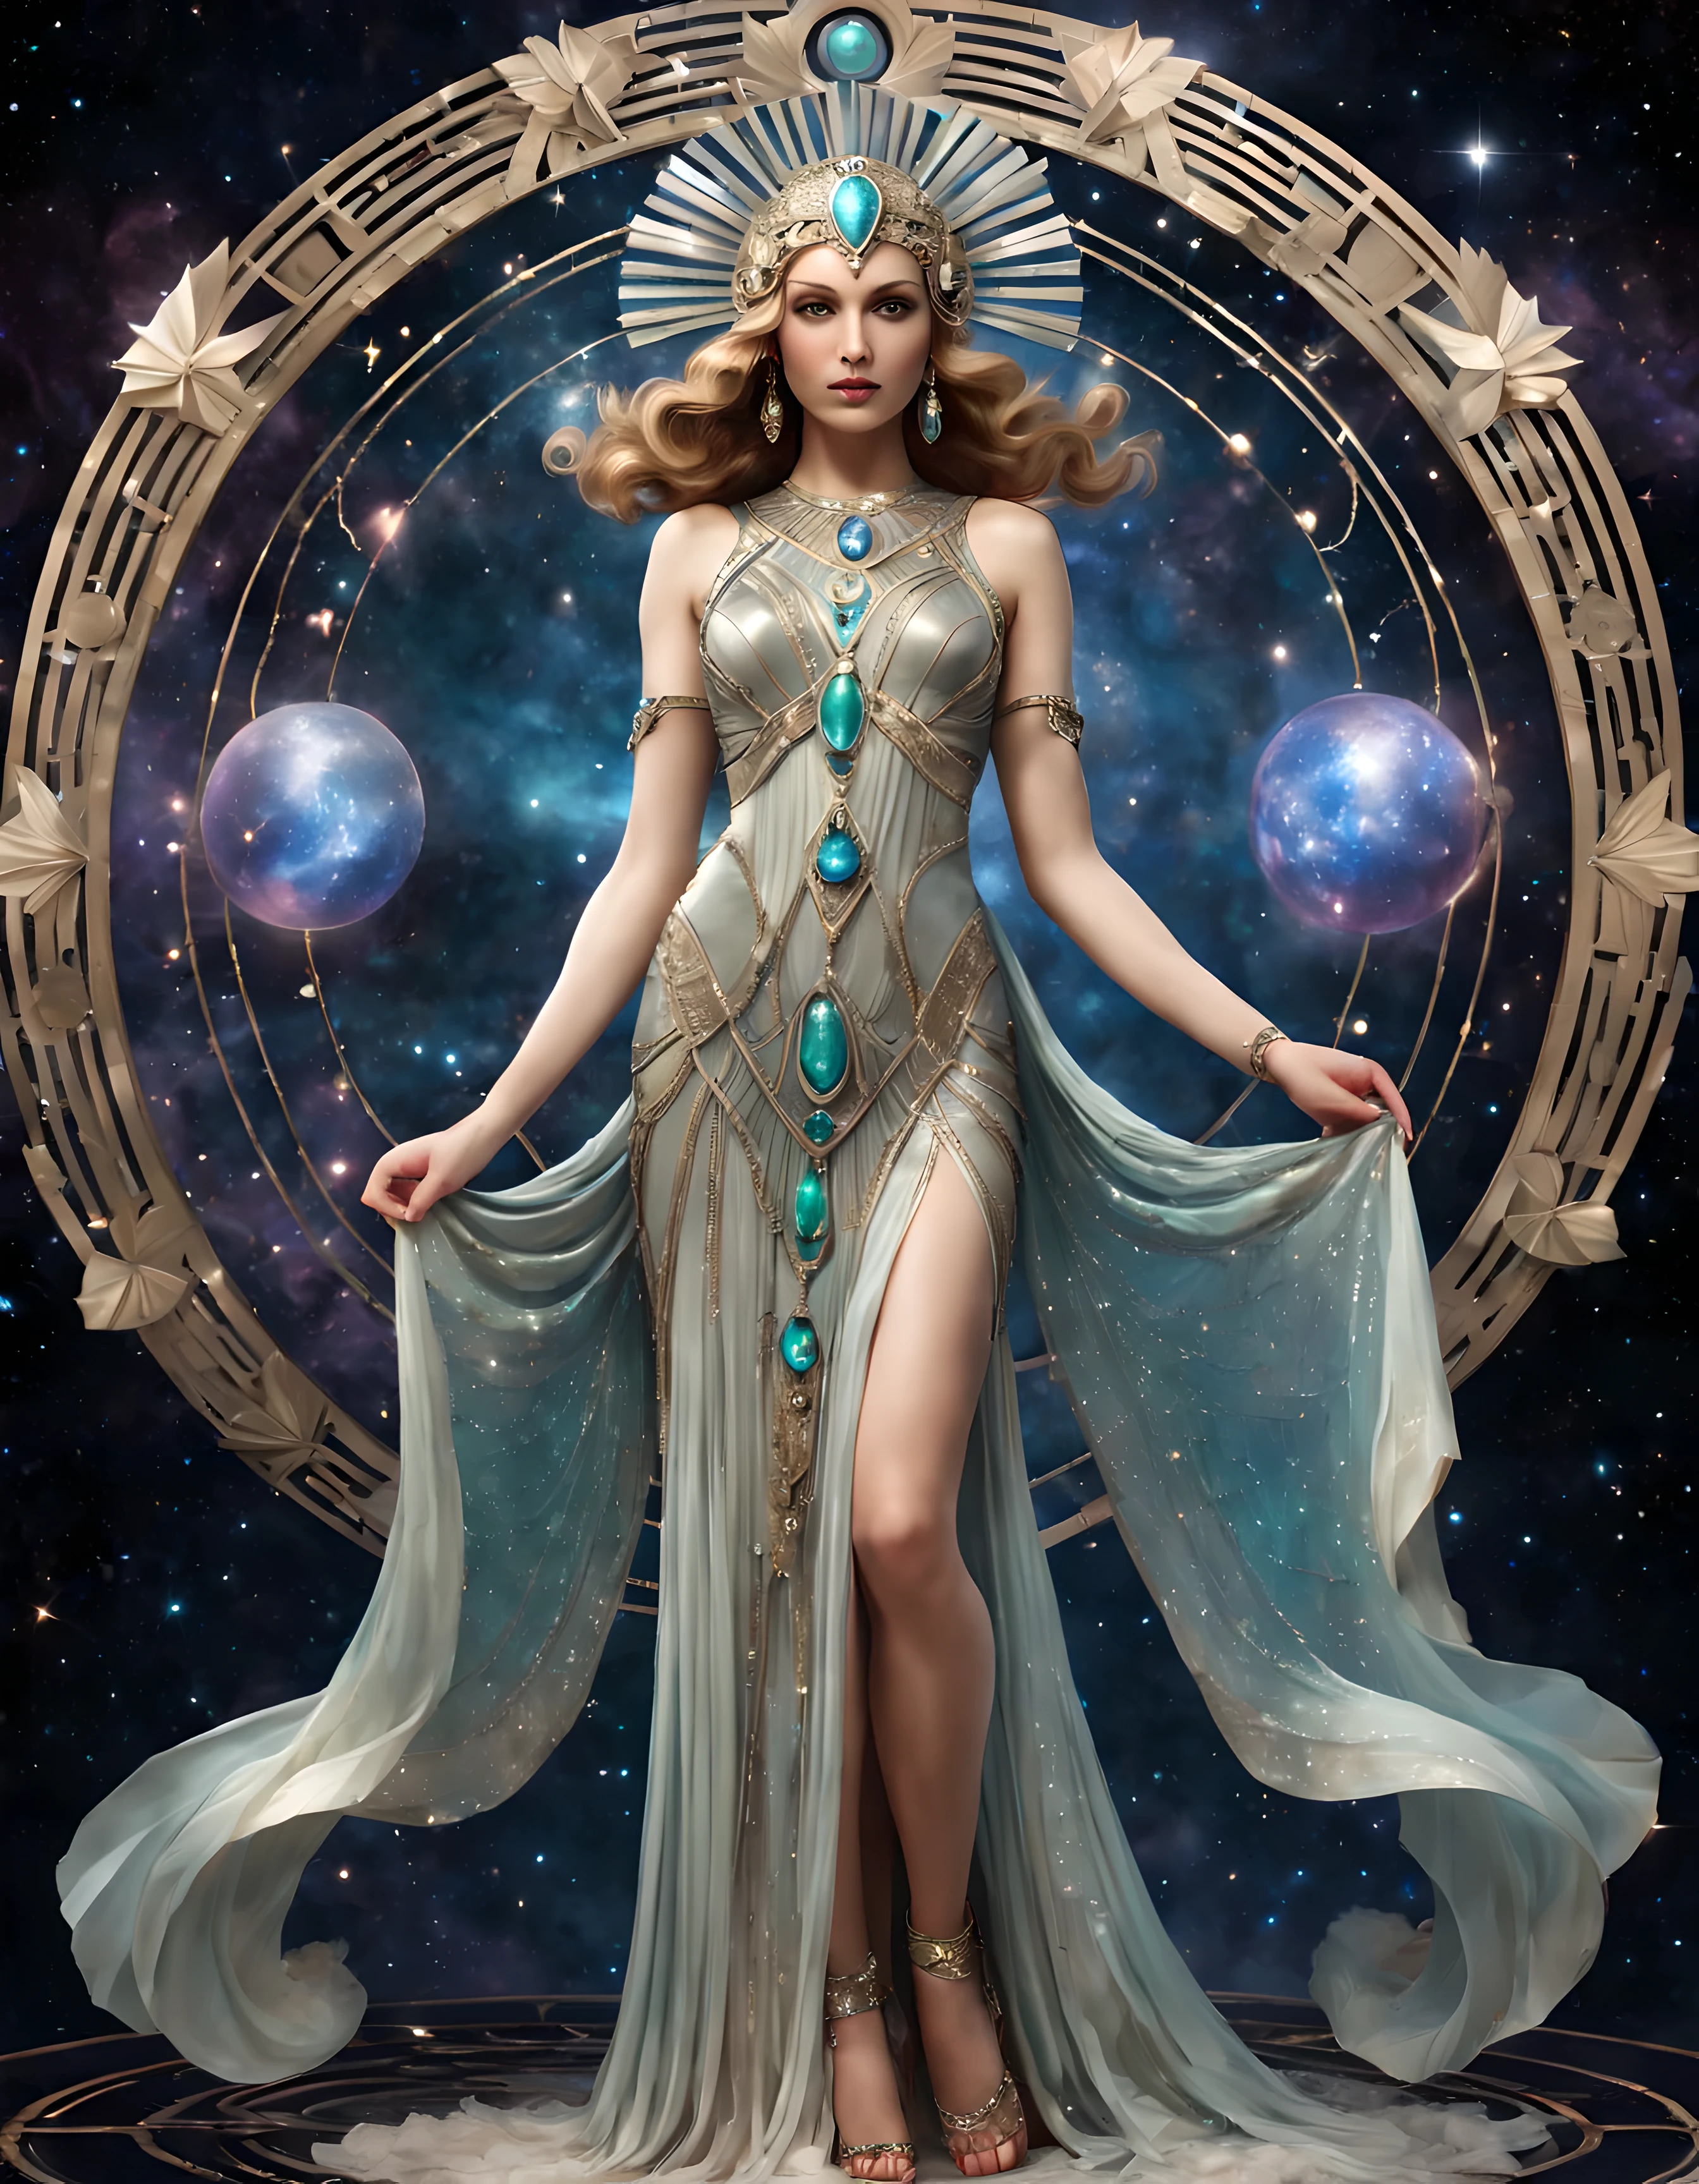 Ganzkörperfoto einer wunderschönen Himmelsgöttin in einem bezaubernden Art-Deco-Kleid, das mit ätherischen Merkmalen und kostbaren Edelsteinen geschmückt ist, ((shimmer)), kosmischer Hintergrund. | ((Mehr_Detail))